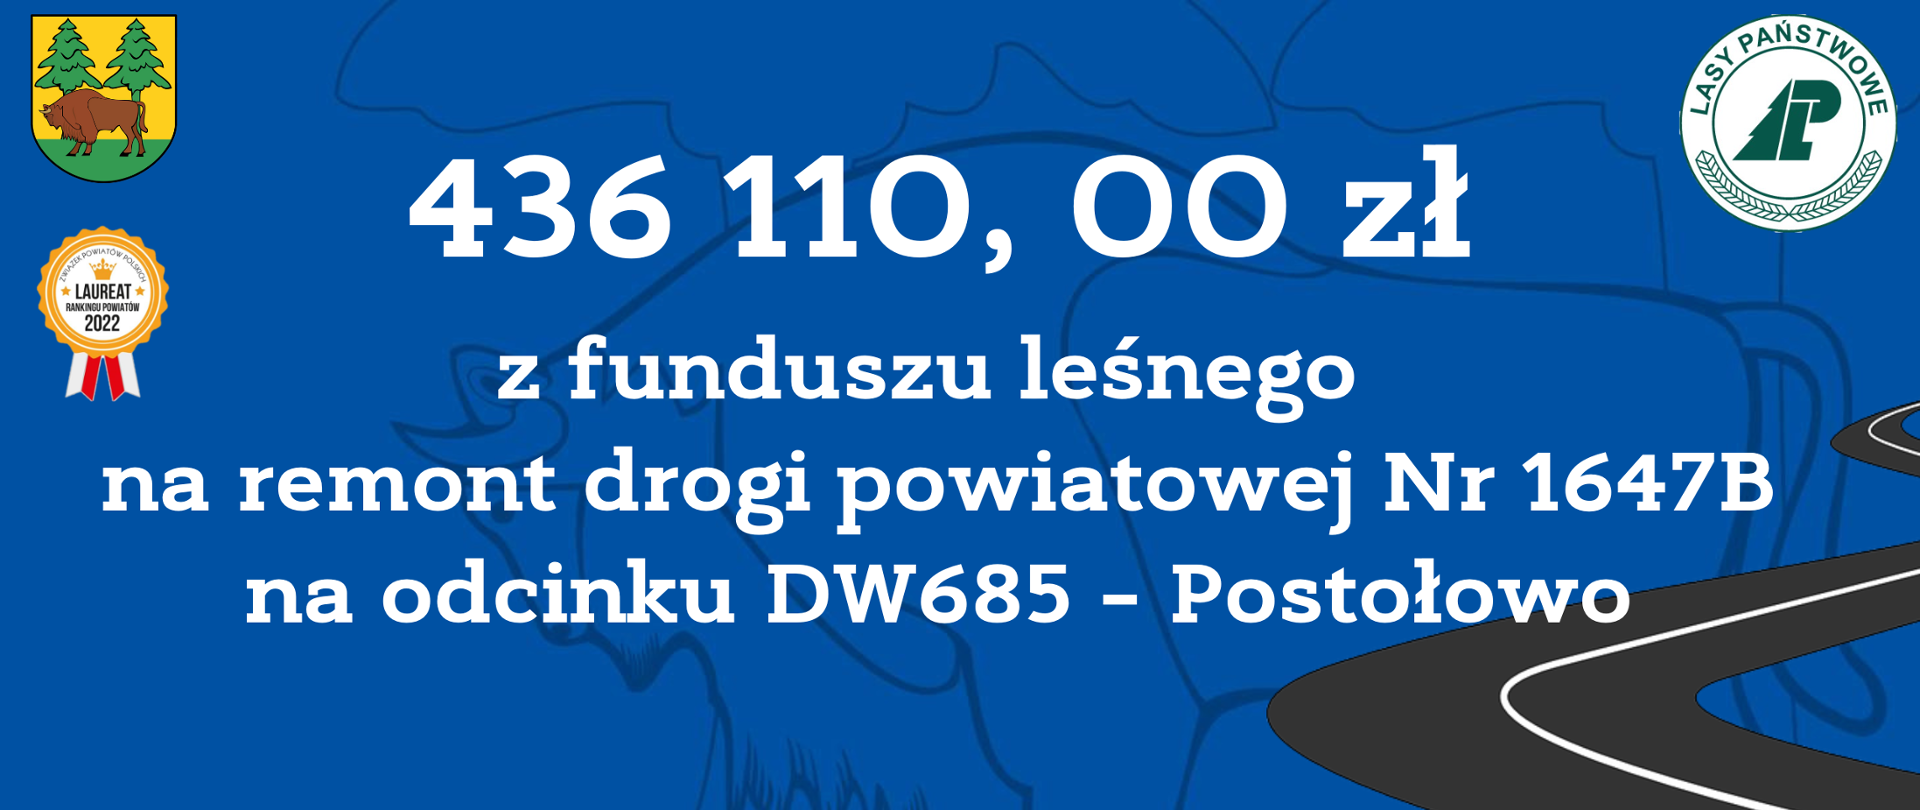 436 110, 00 zł z funduszu leśnego na remont drogi powiatowej Nr 1647B na odcinku DW685 – Postołowo 